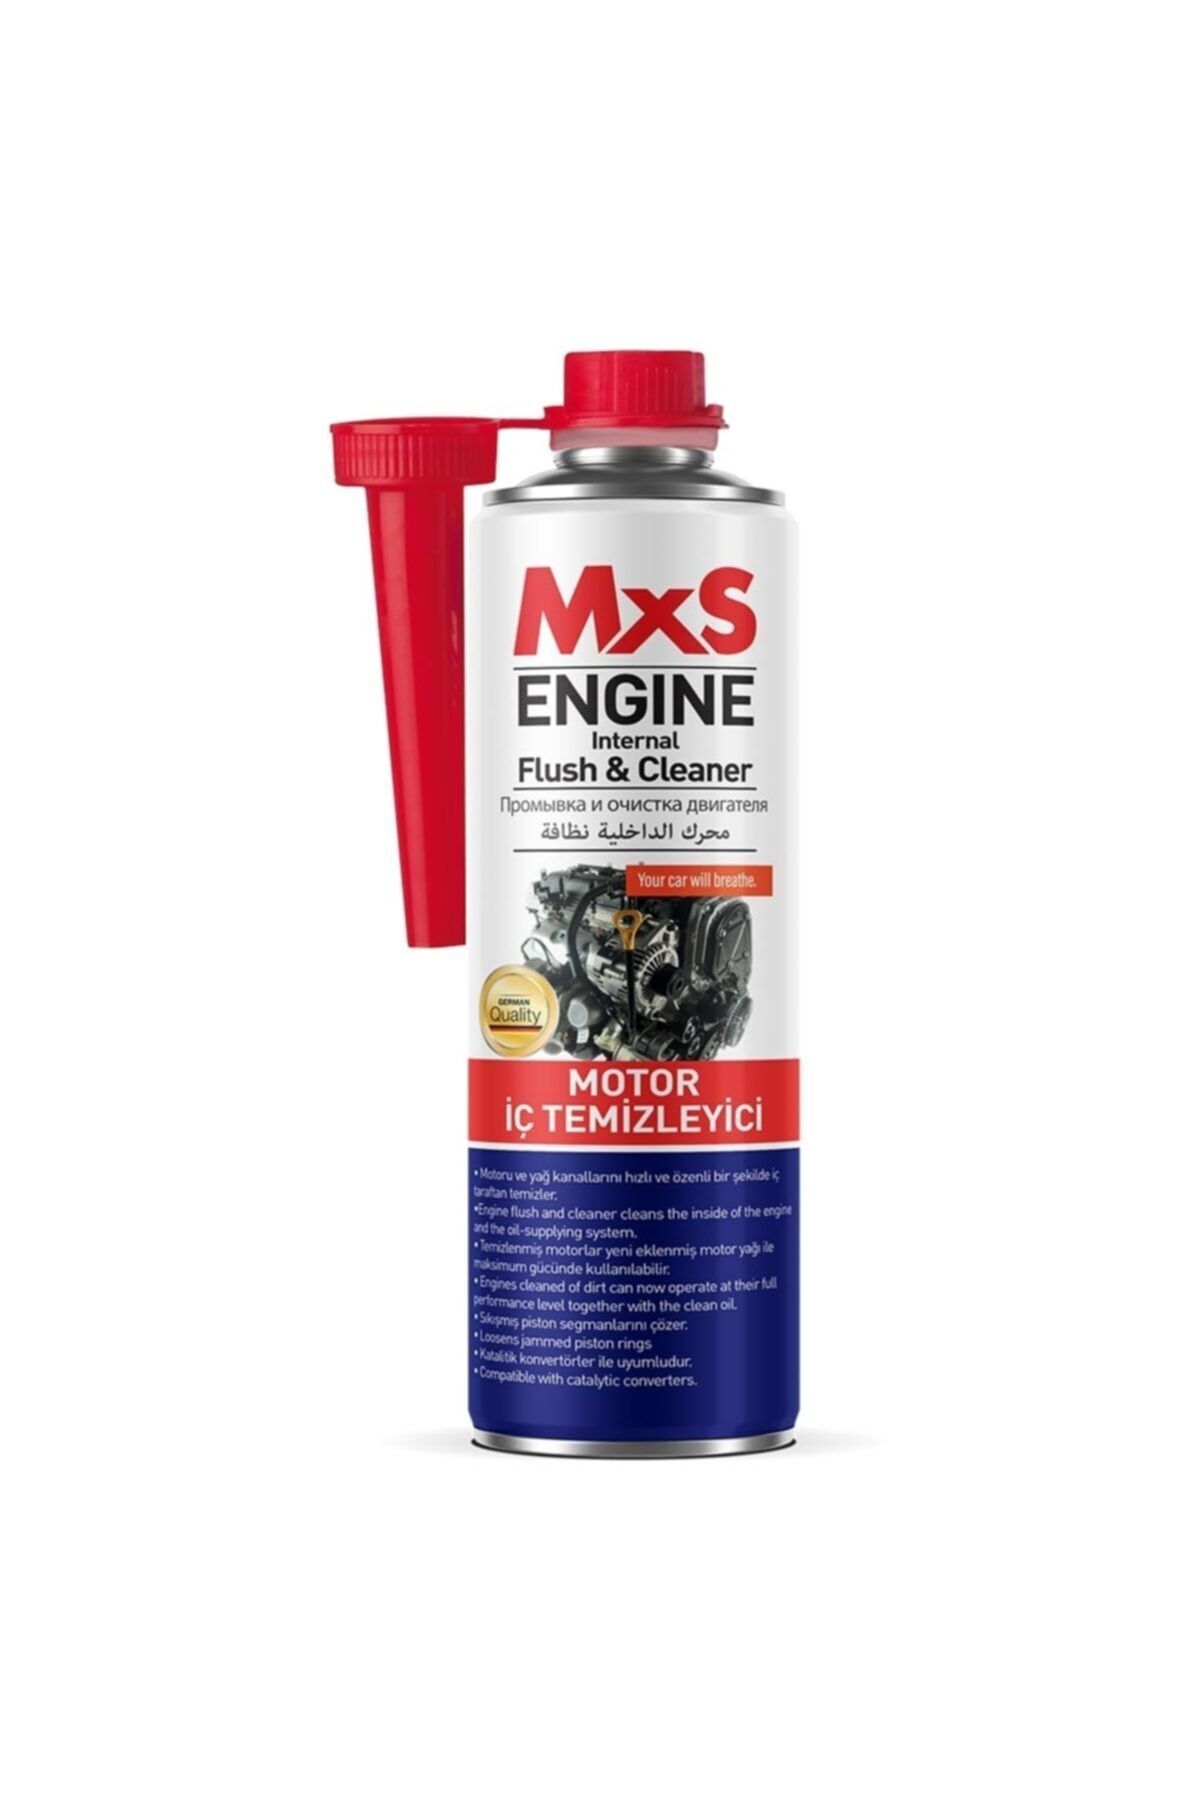 MxS Motor Iç Temizleyici / 300 Ml